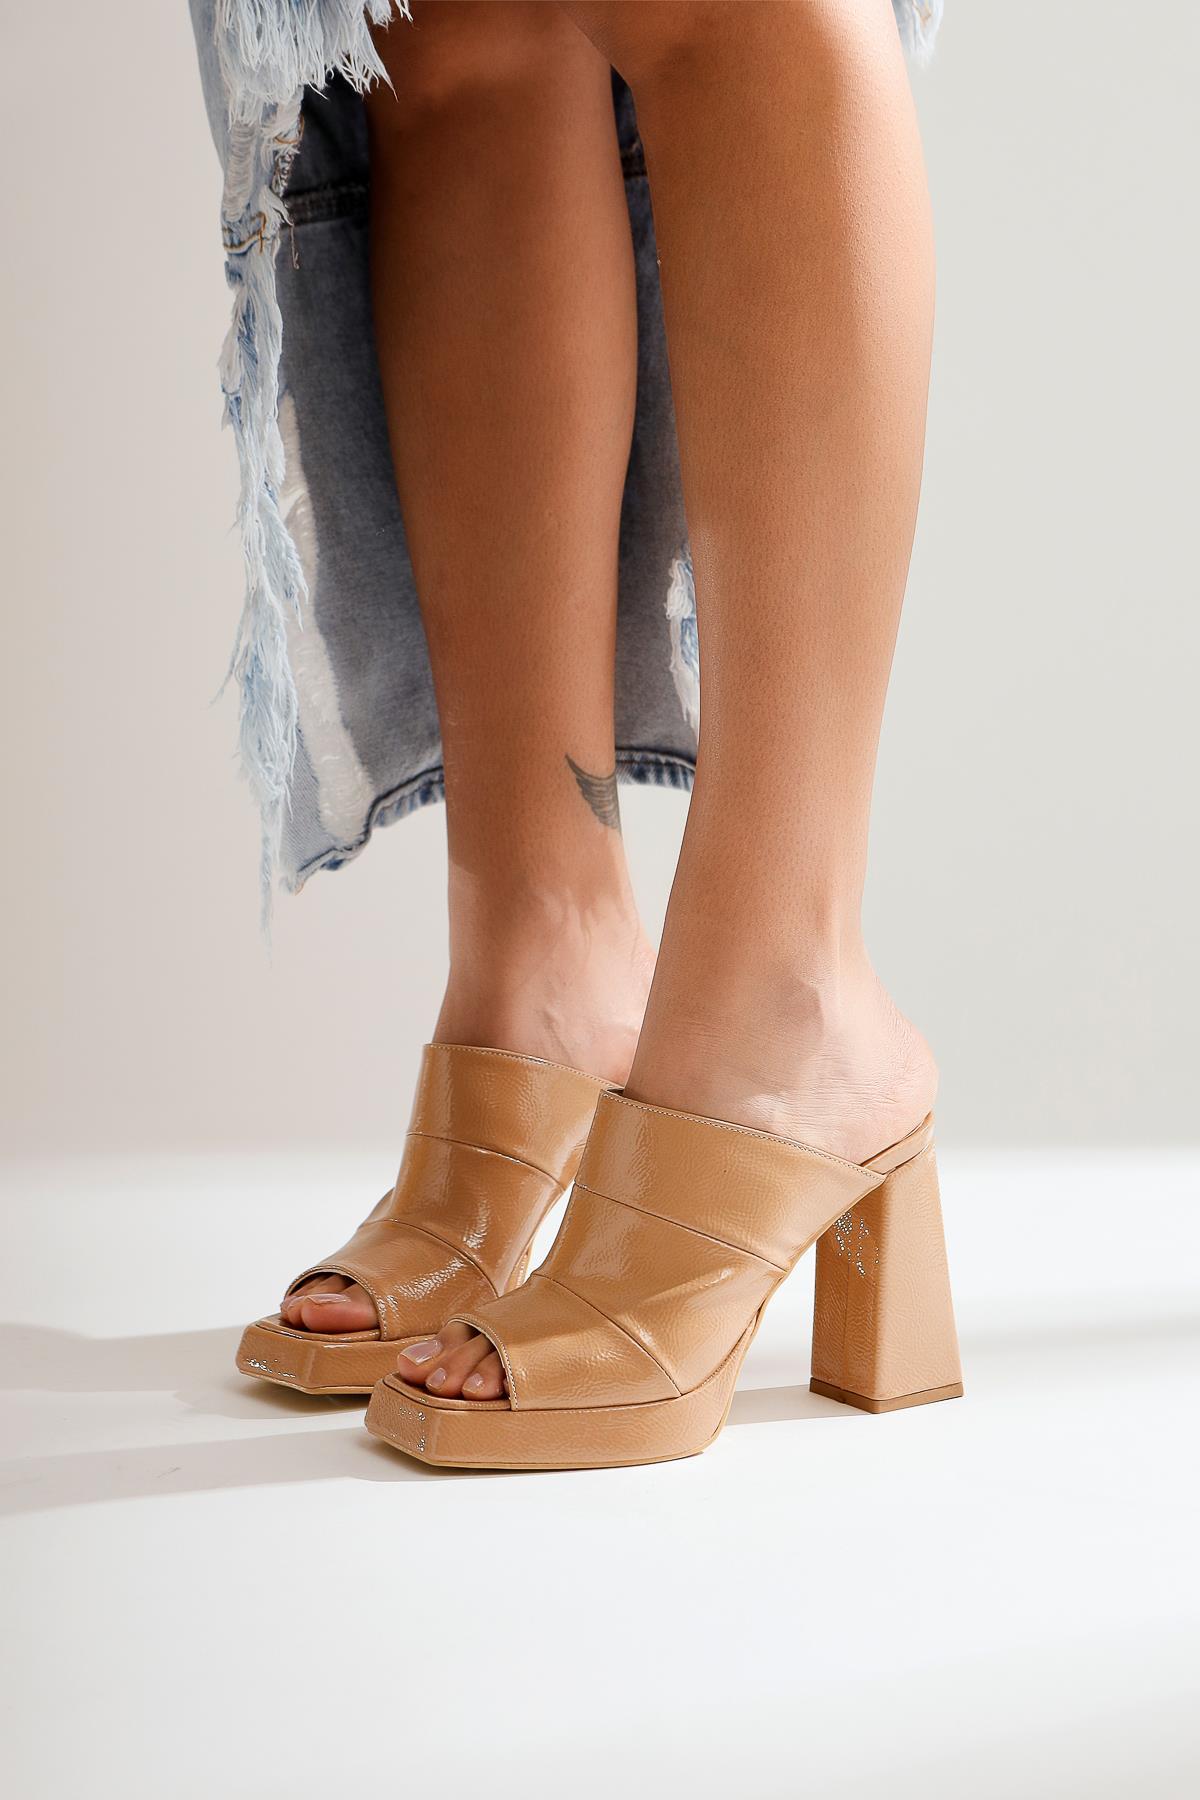 Twila Nud Kırışık Rugan Kalın Topuklu Terlik | Limoya.com ile Modayı Keşfet!